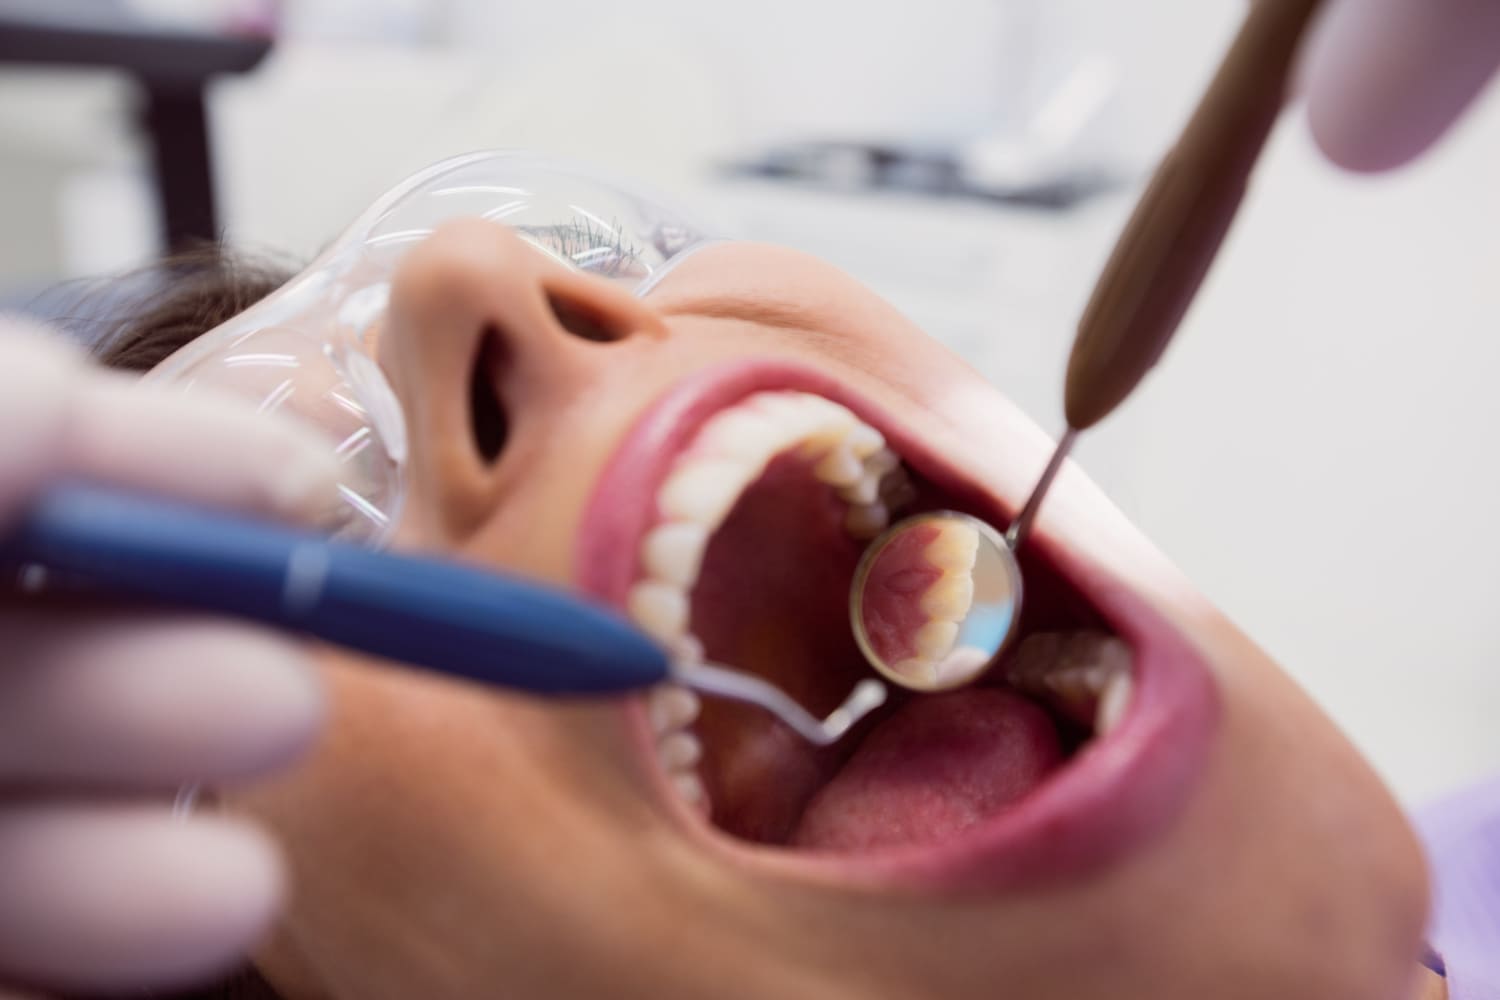 caracteristicas de la caries dental